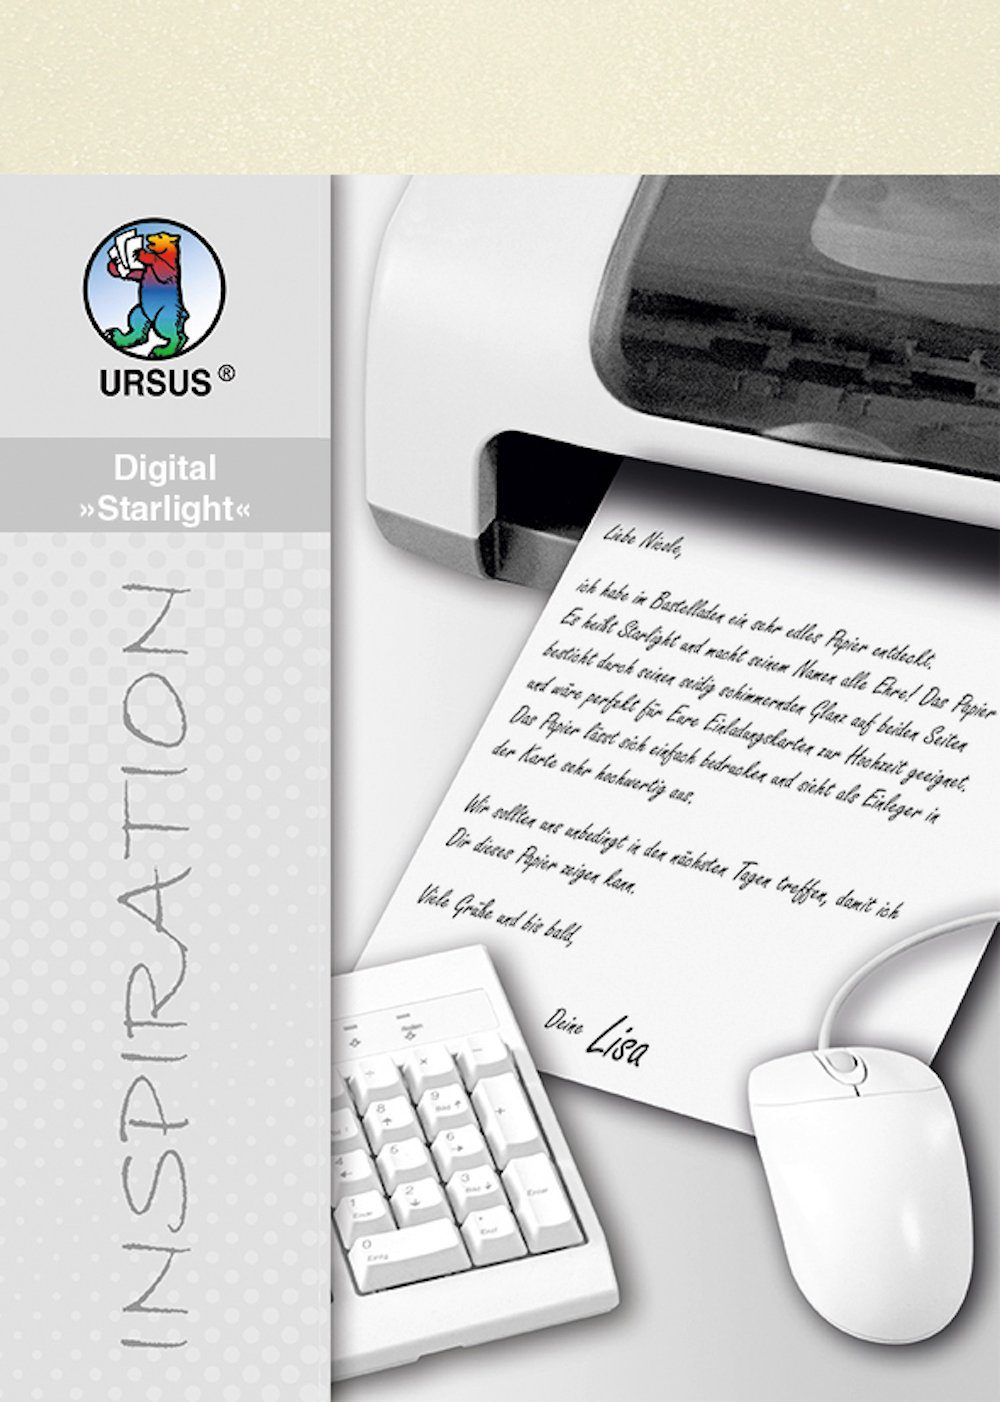 URSUS Zeichenpapier Druckerpapier Digital 'Starlight' 120 g/qm elfenbe